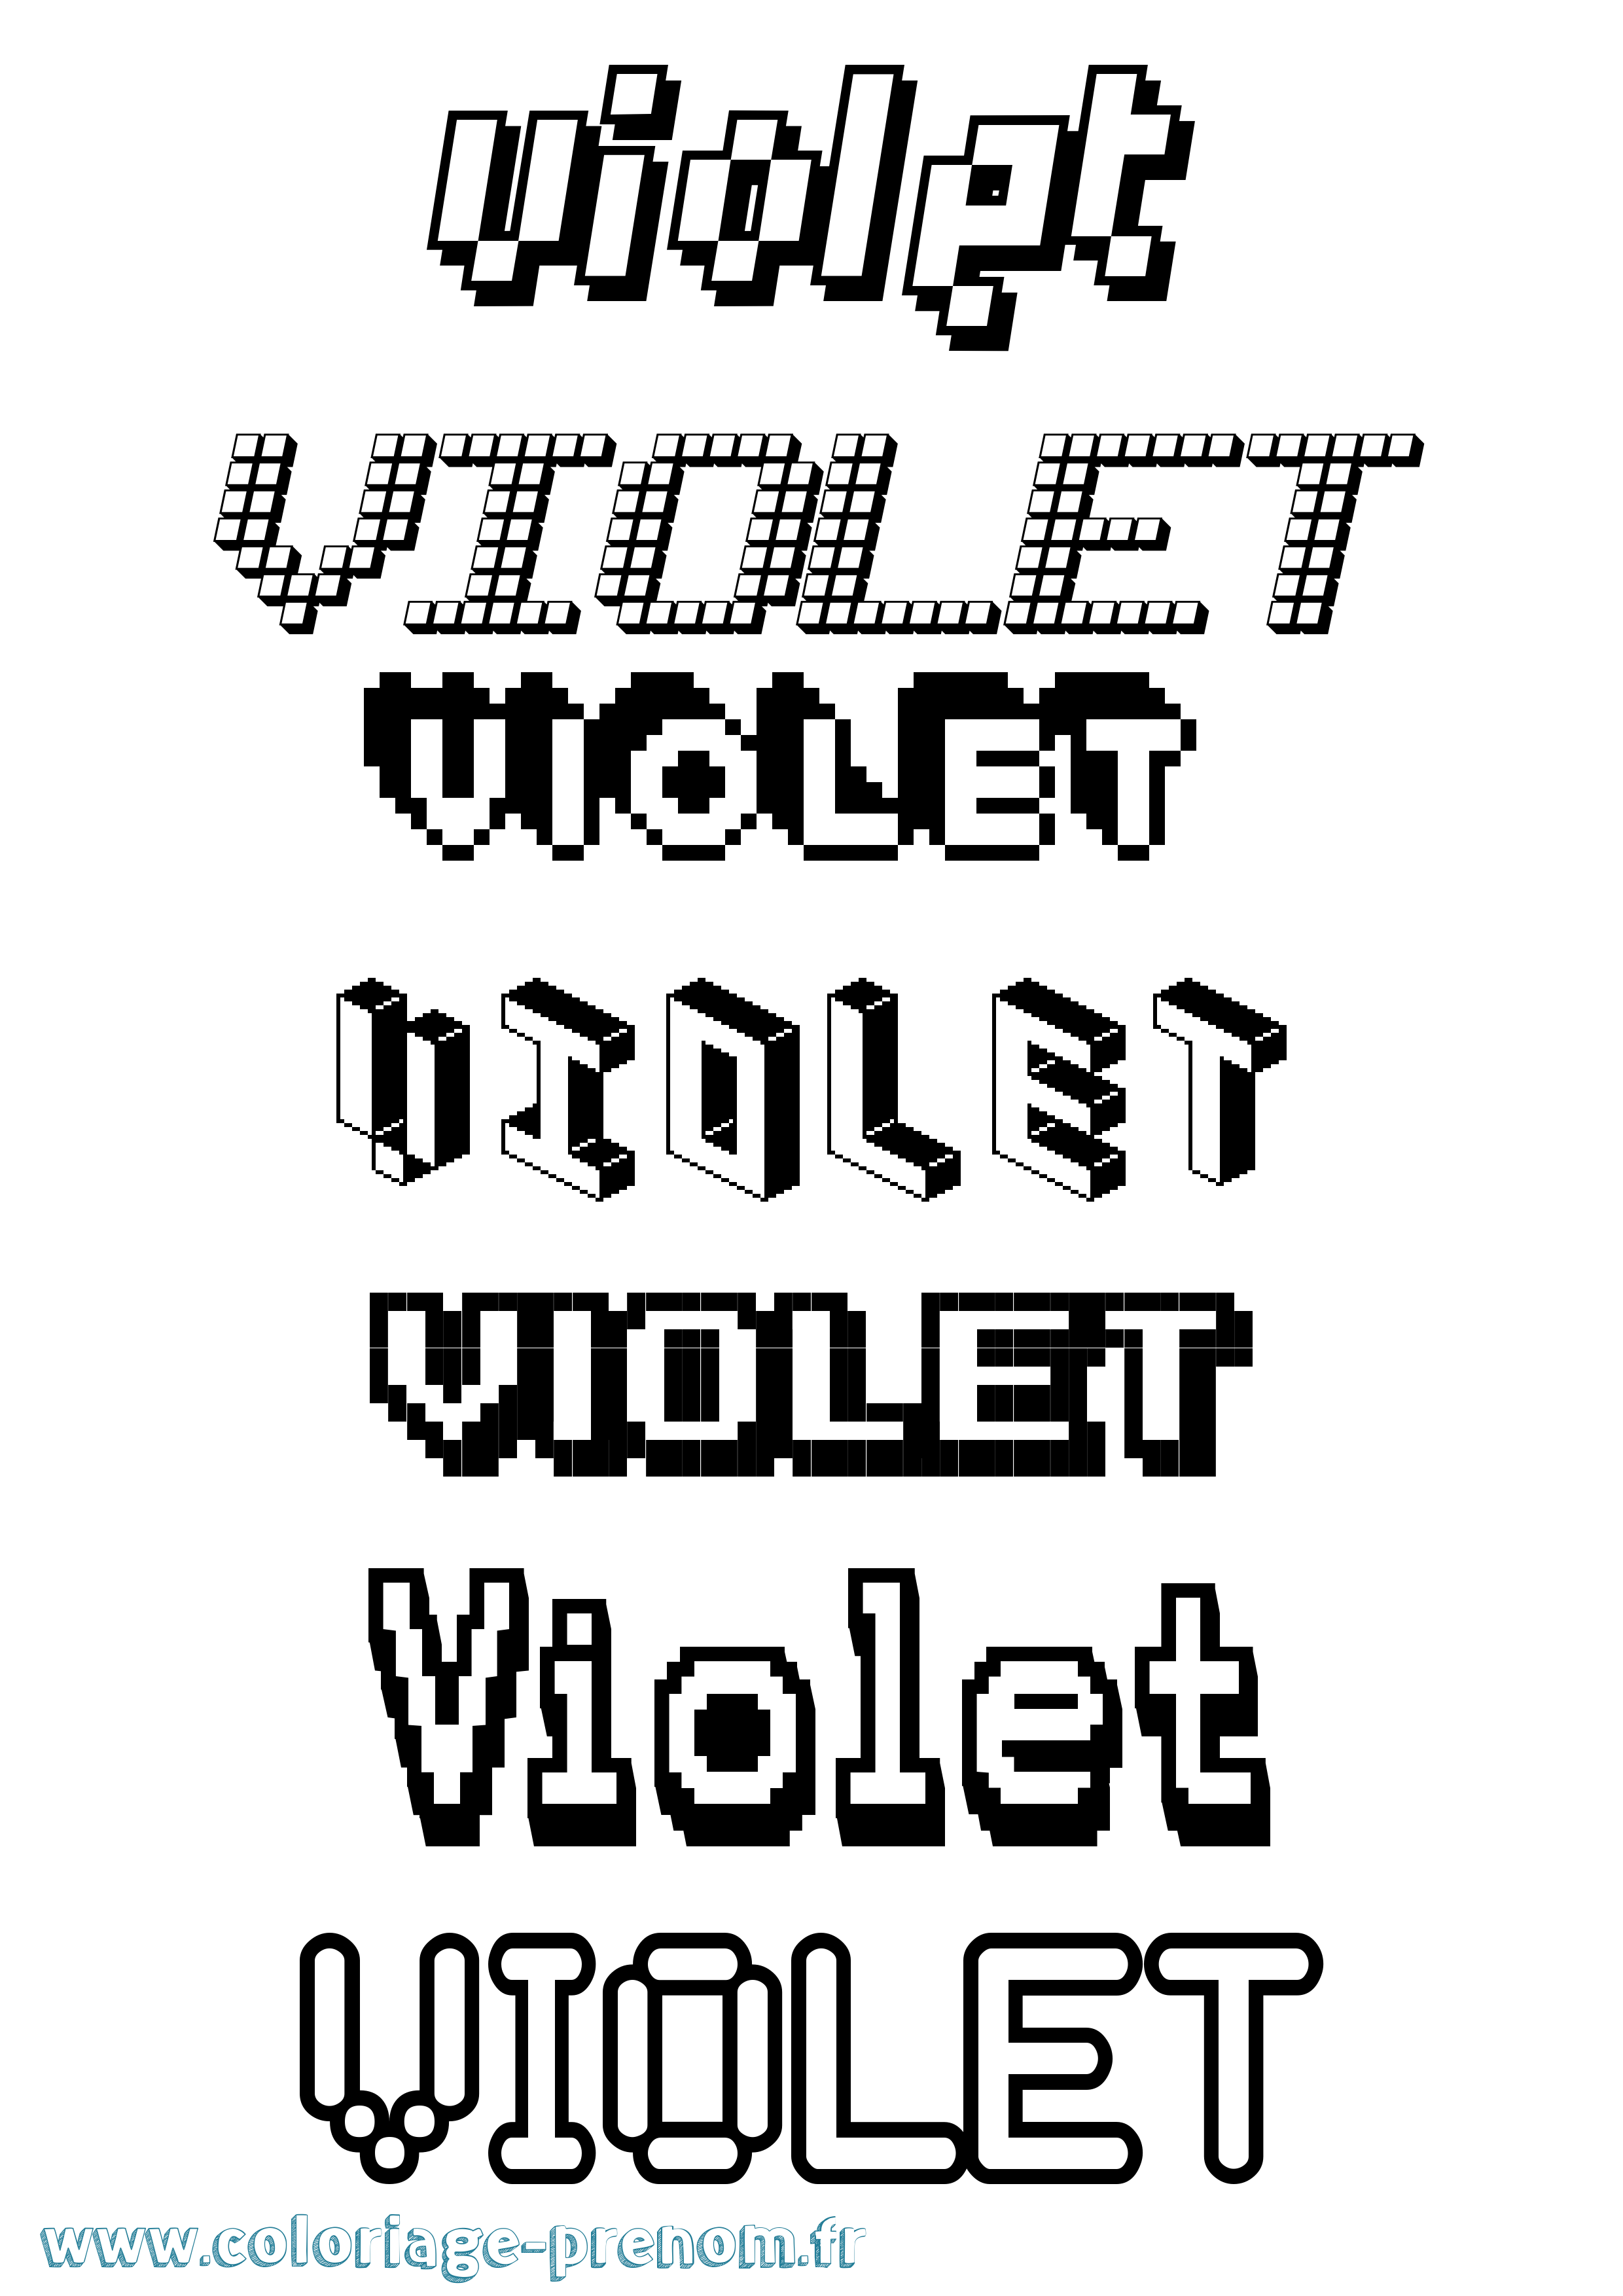 Coloriage prénom Violet Pixel